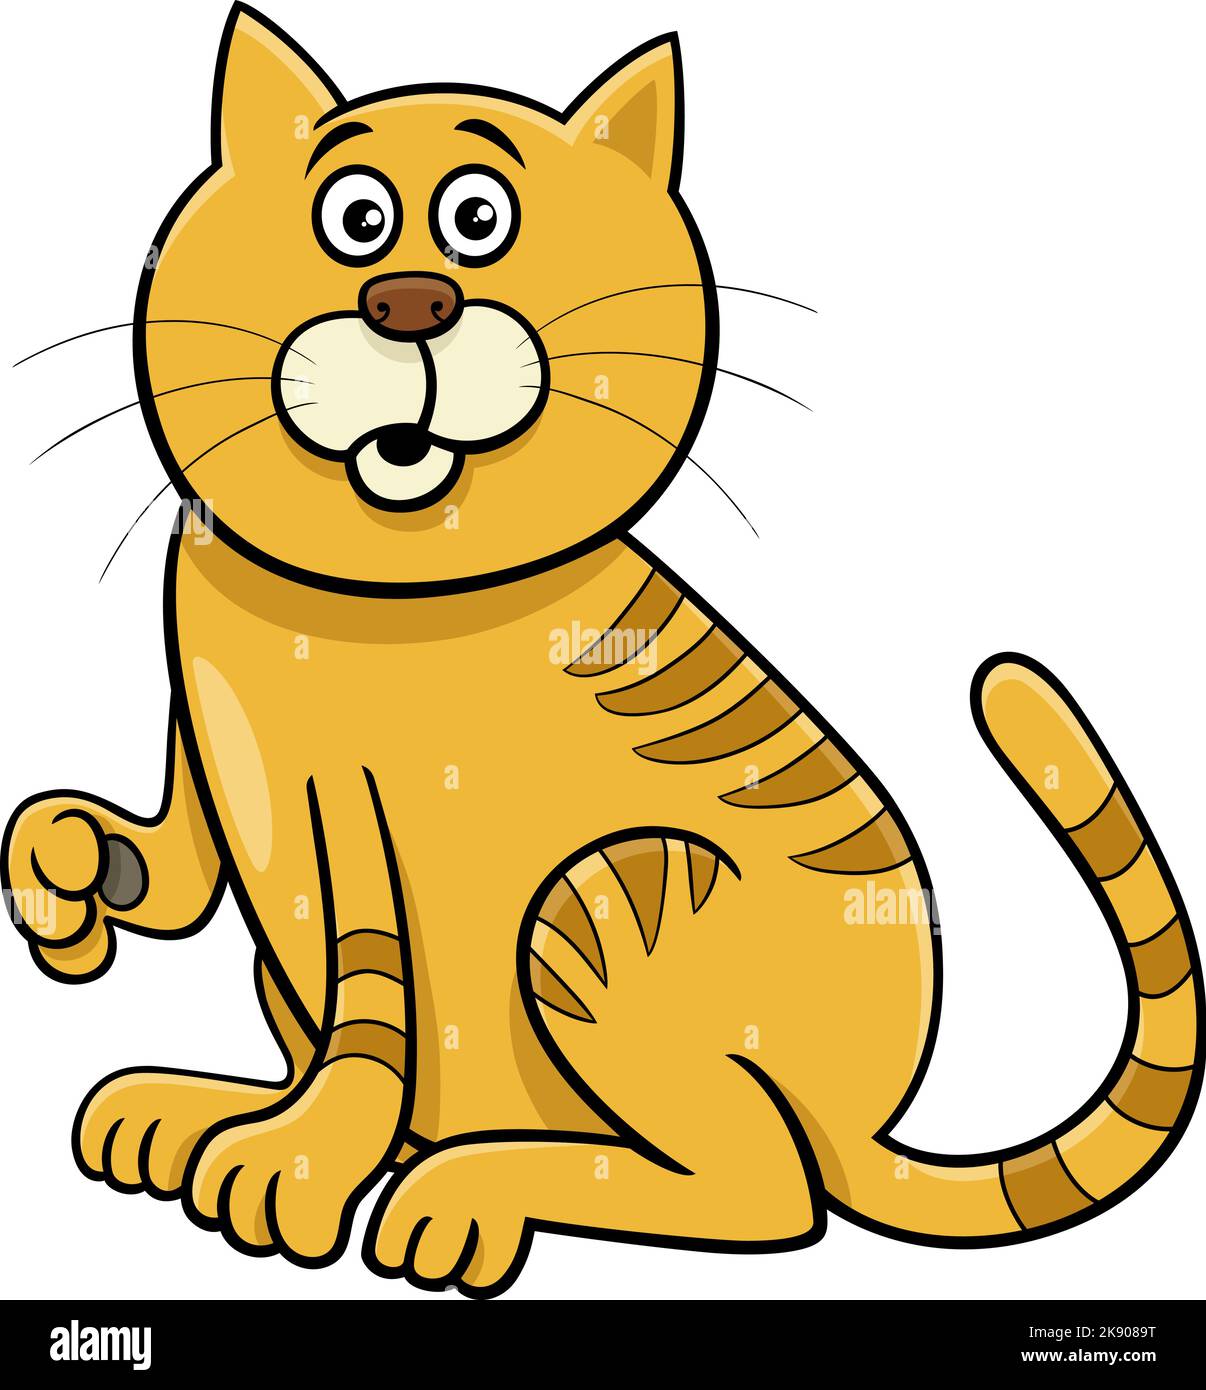 Illustration de dessin animé de drôle surpris chat personnage d'animal de bande dessinée Illustration de Vecteur